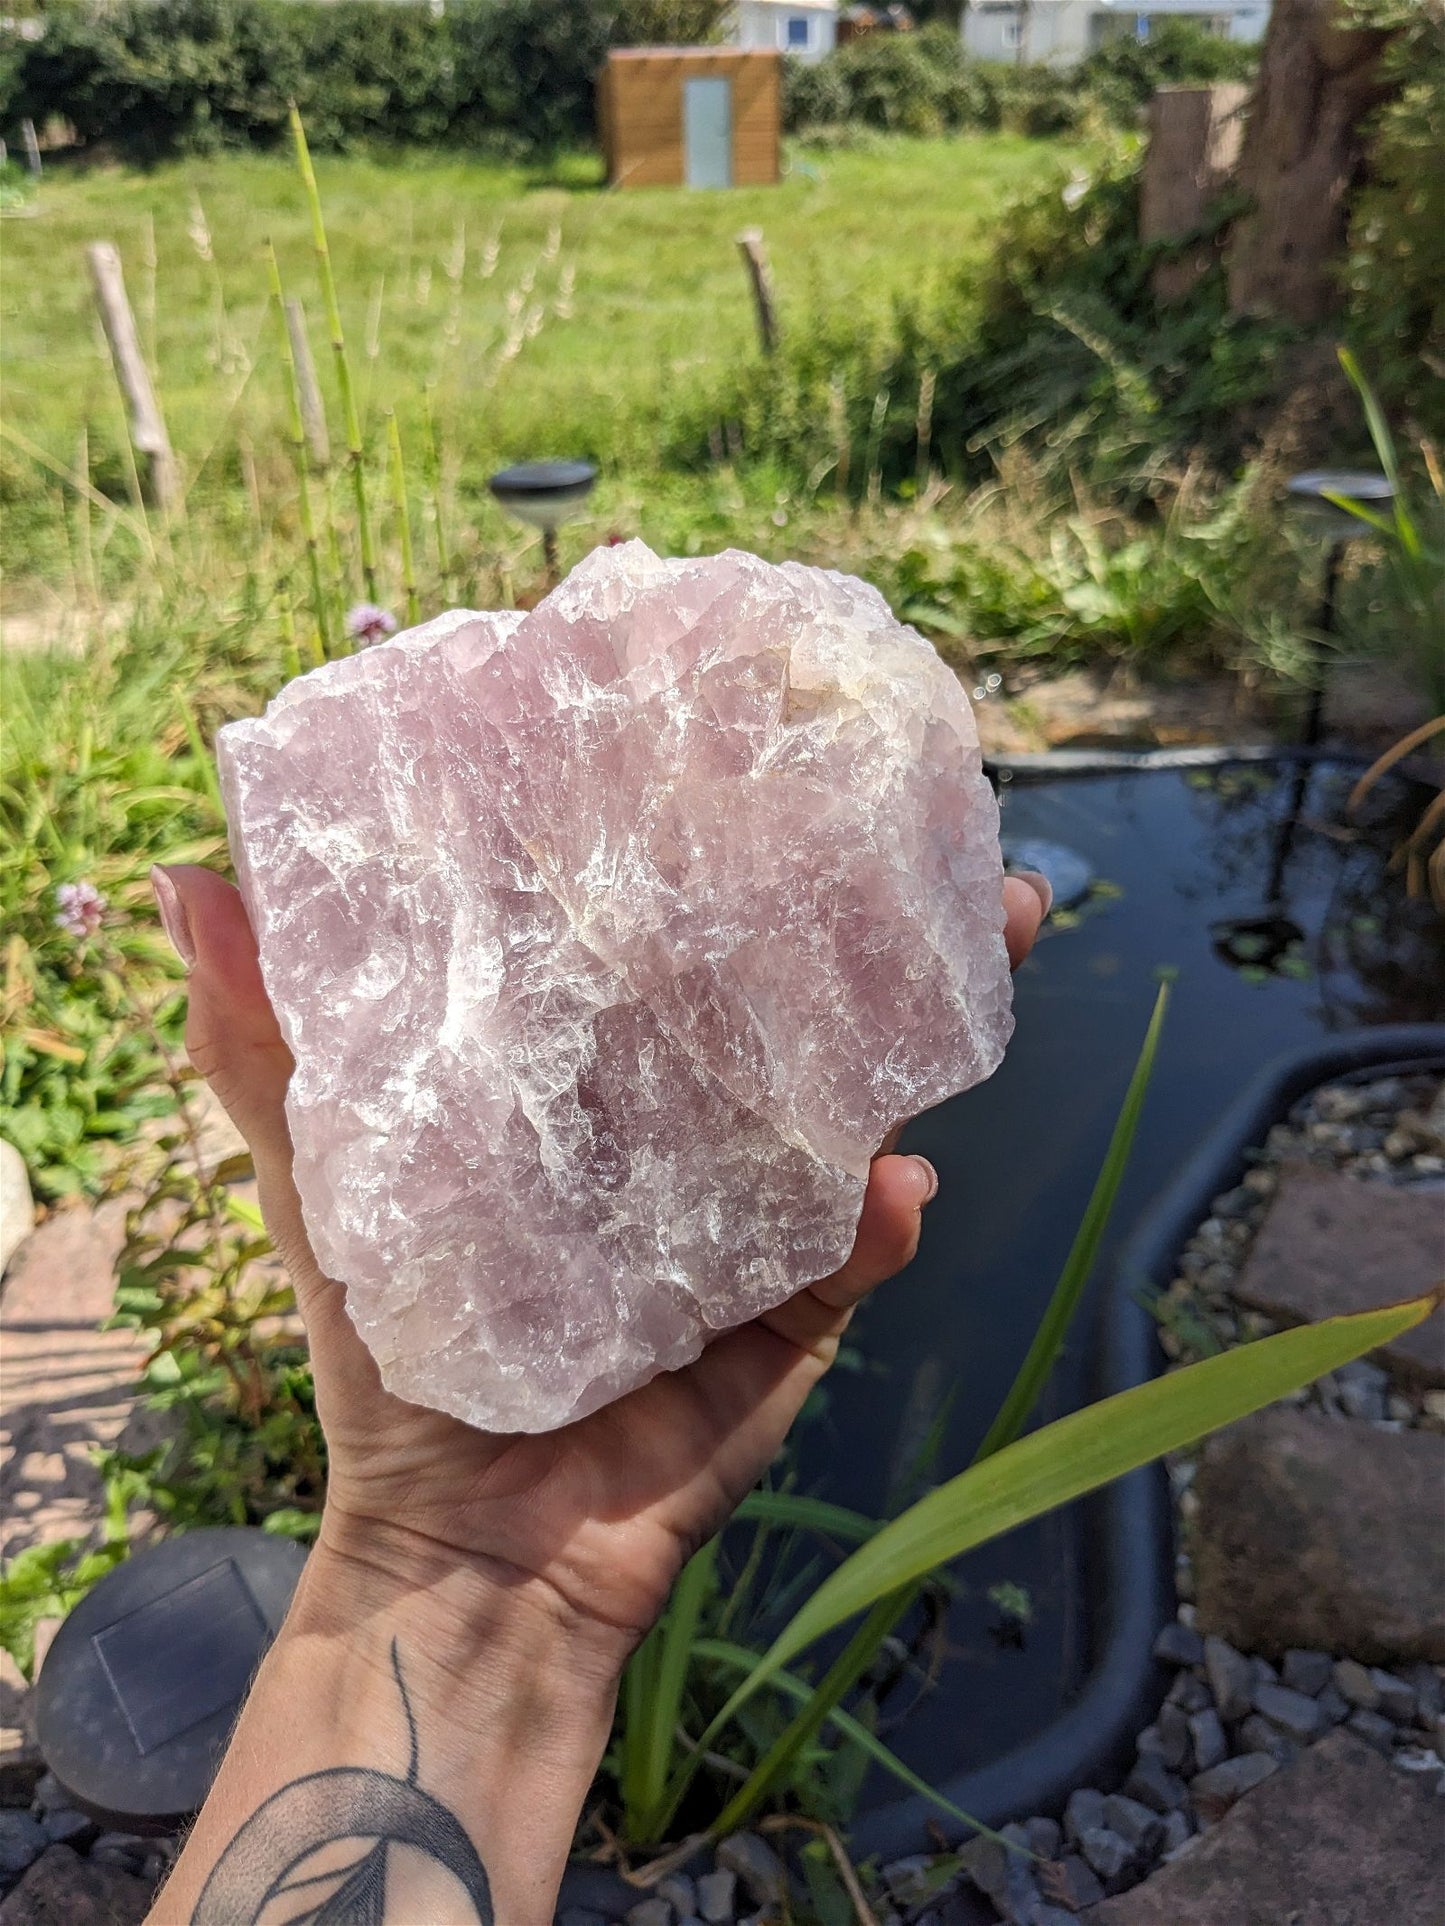 1 morceau brut de quartz rose 1.6 kg - Aurore Lune 